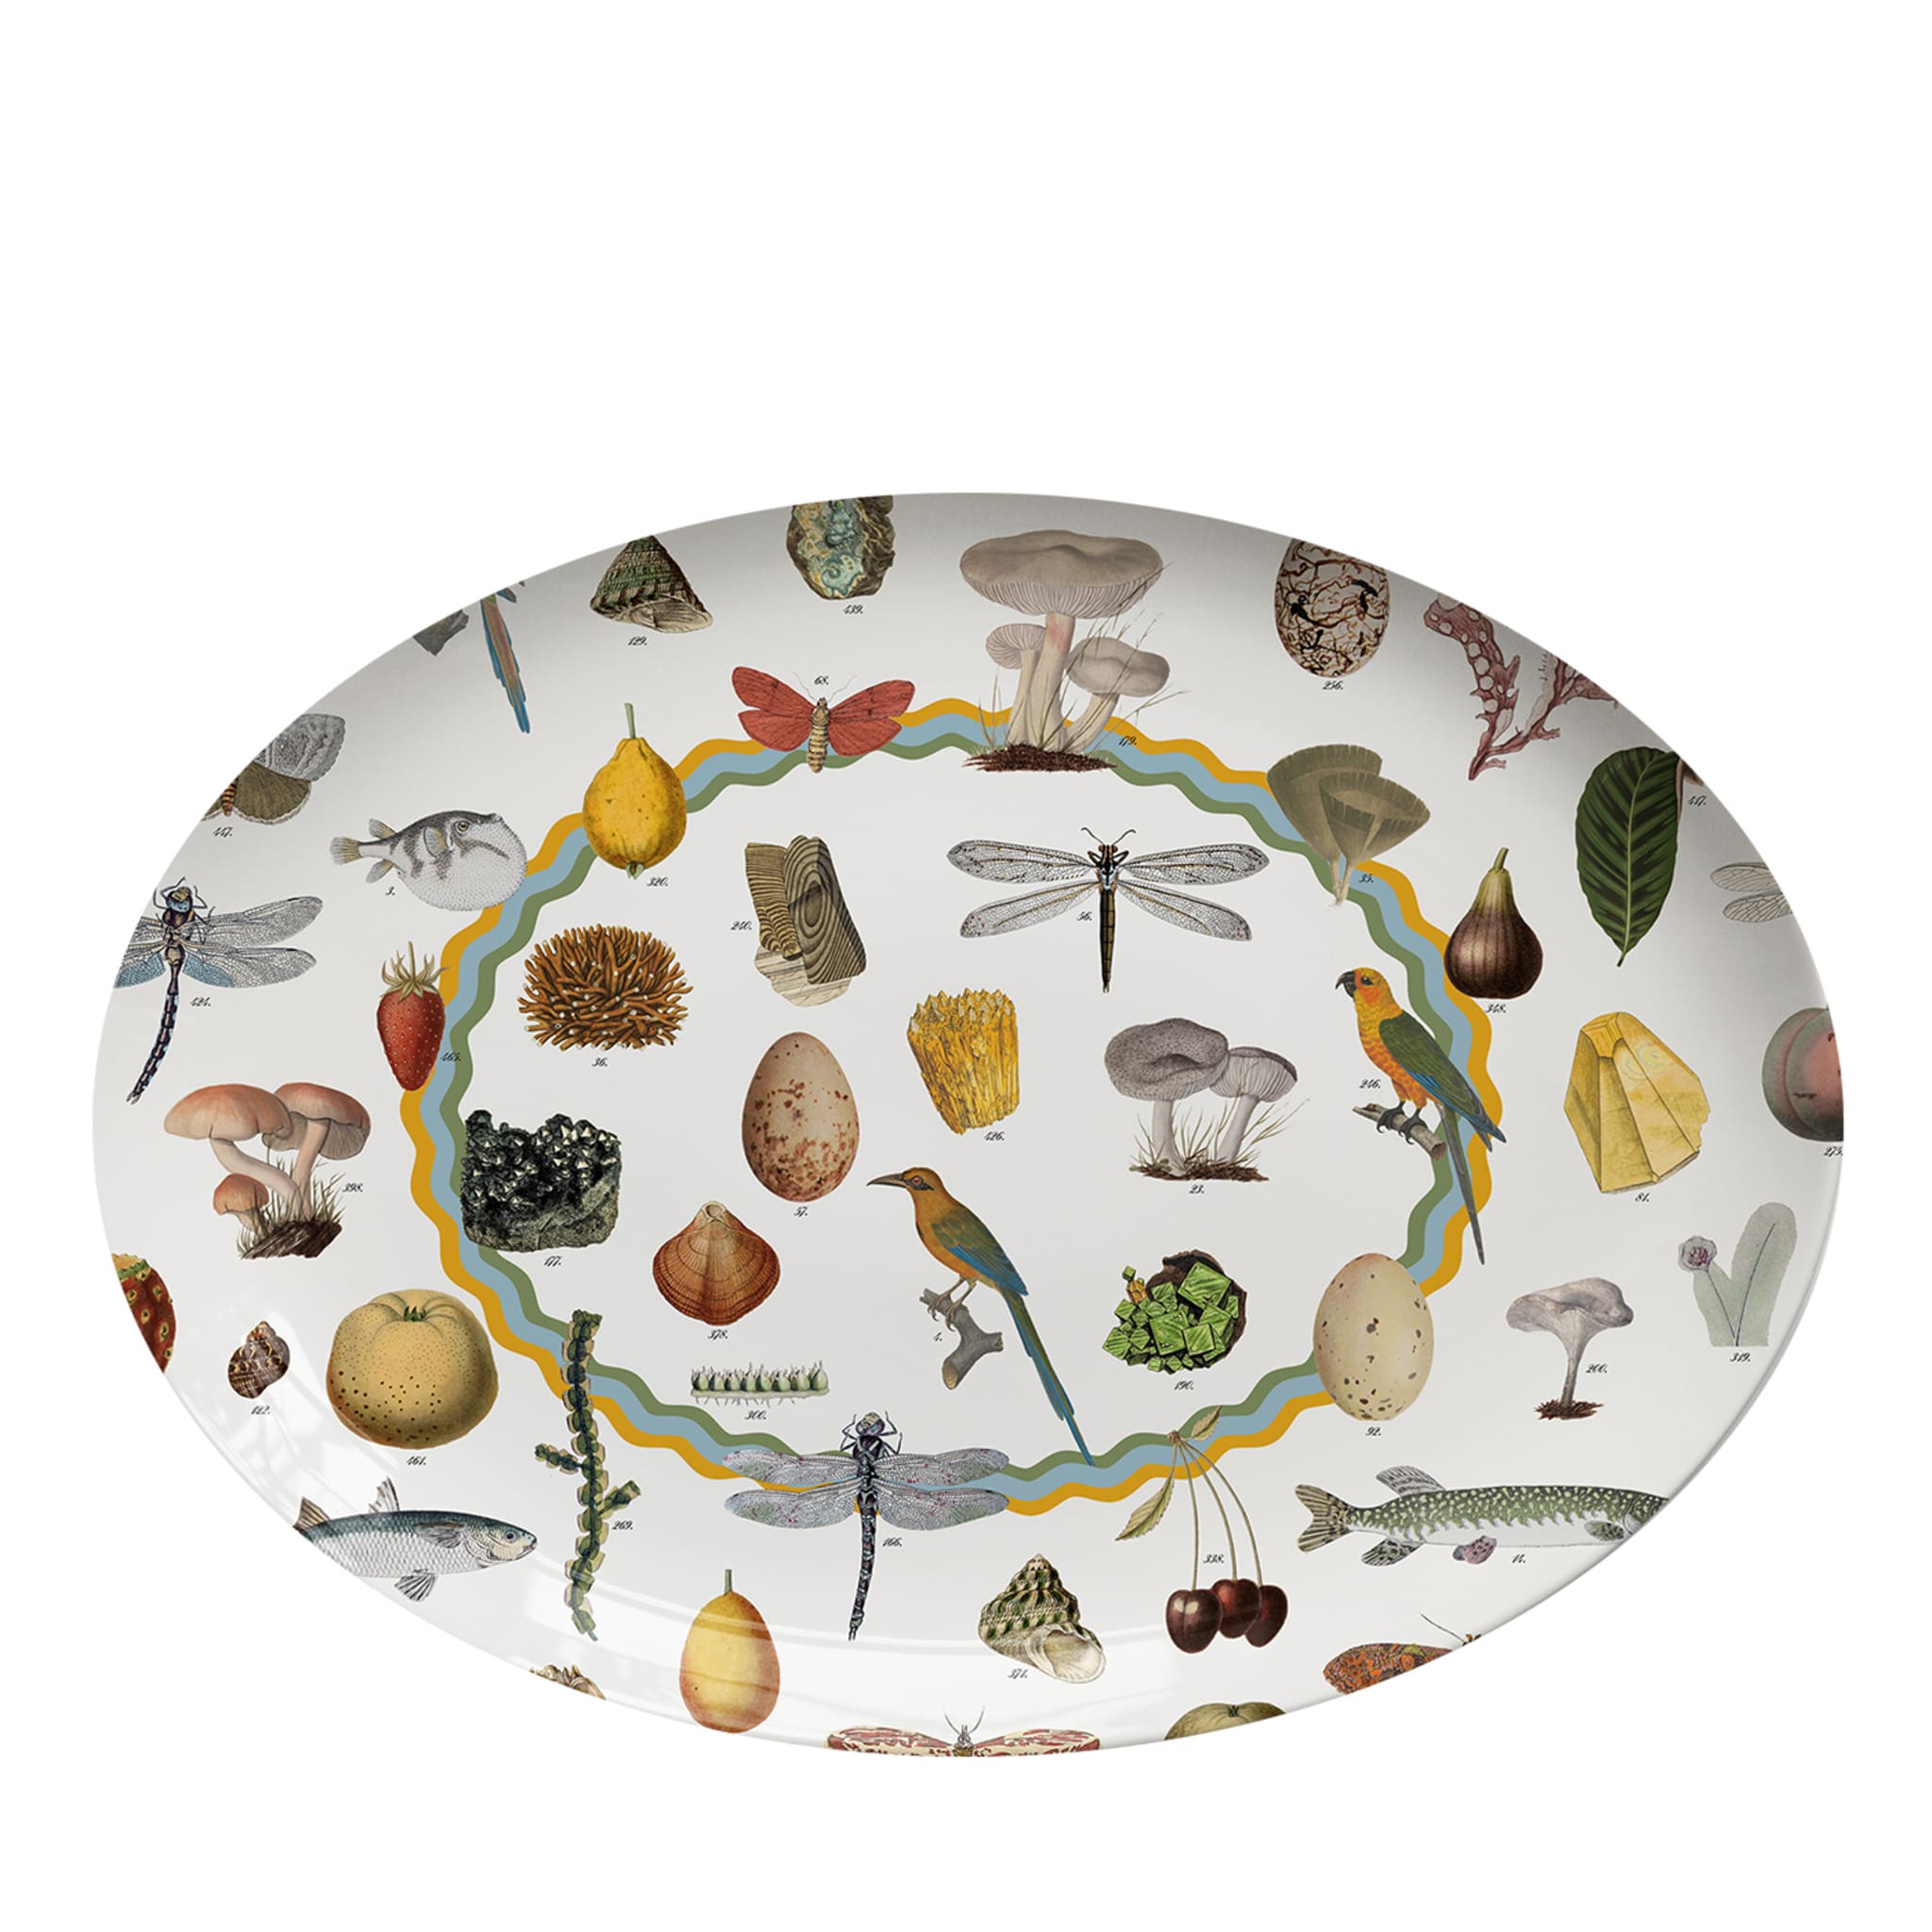 Cabinet De Curiosités Oval Porcelain Platter - Main view